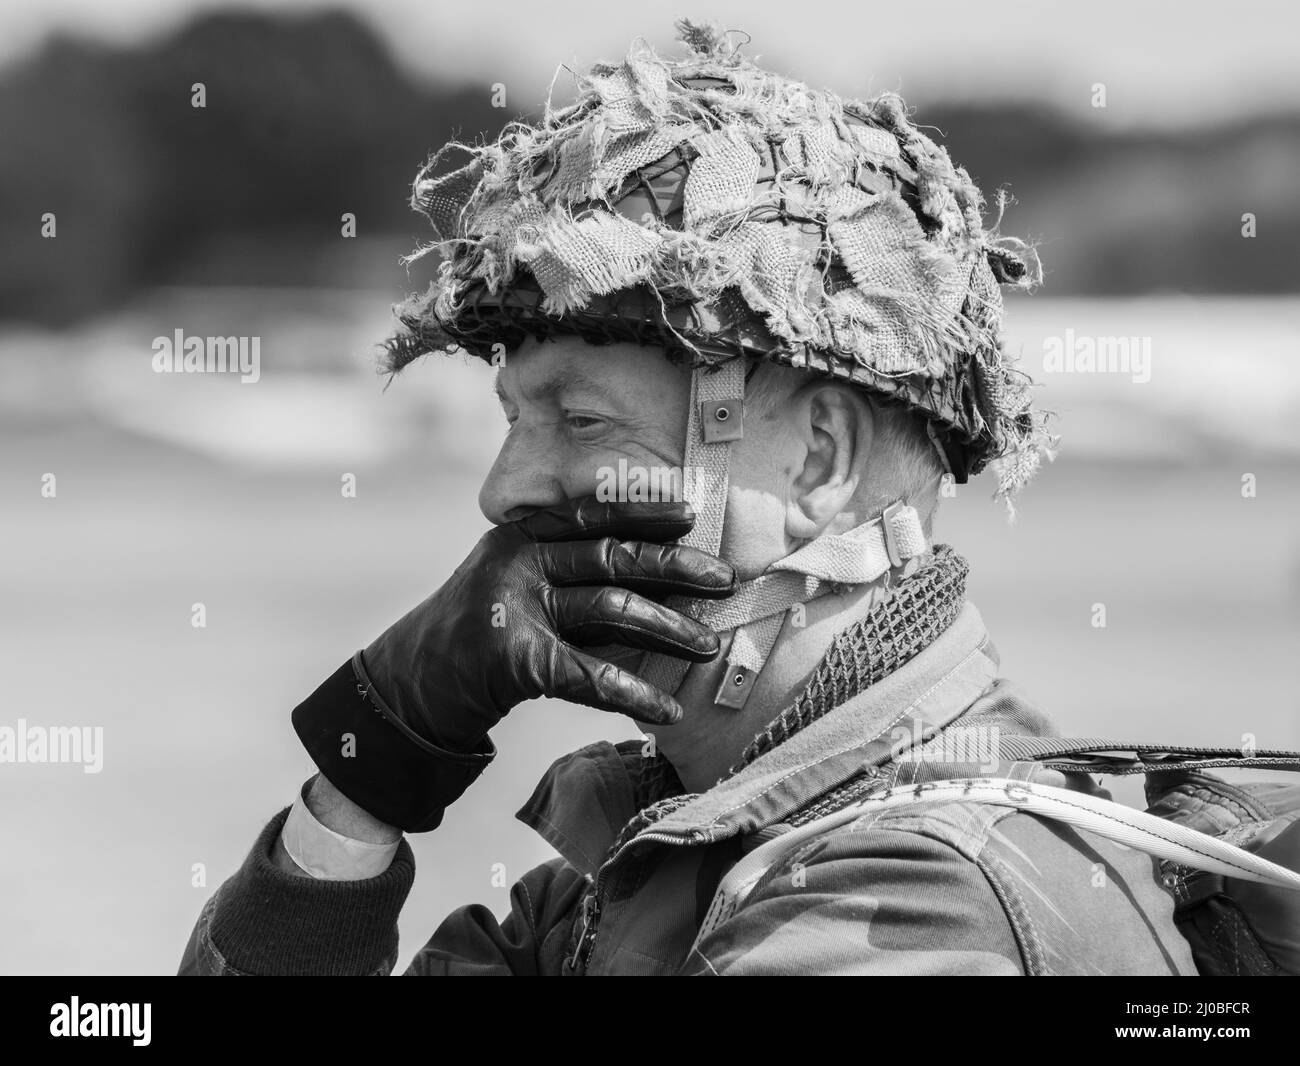 Headcorn, Kent UK - Luglio 1st 2018 rievocazione del paracadutista della seconda Guerra Mondiale. Immagine editoriale in bianco e nero dei soldati che si preparano a salire a bordo del C- Foto Stock